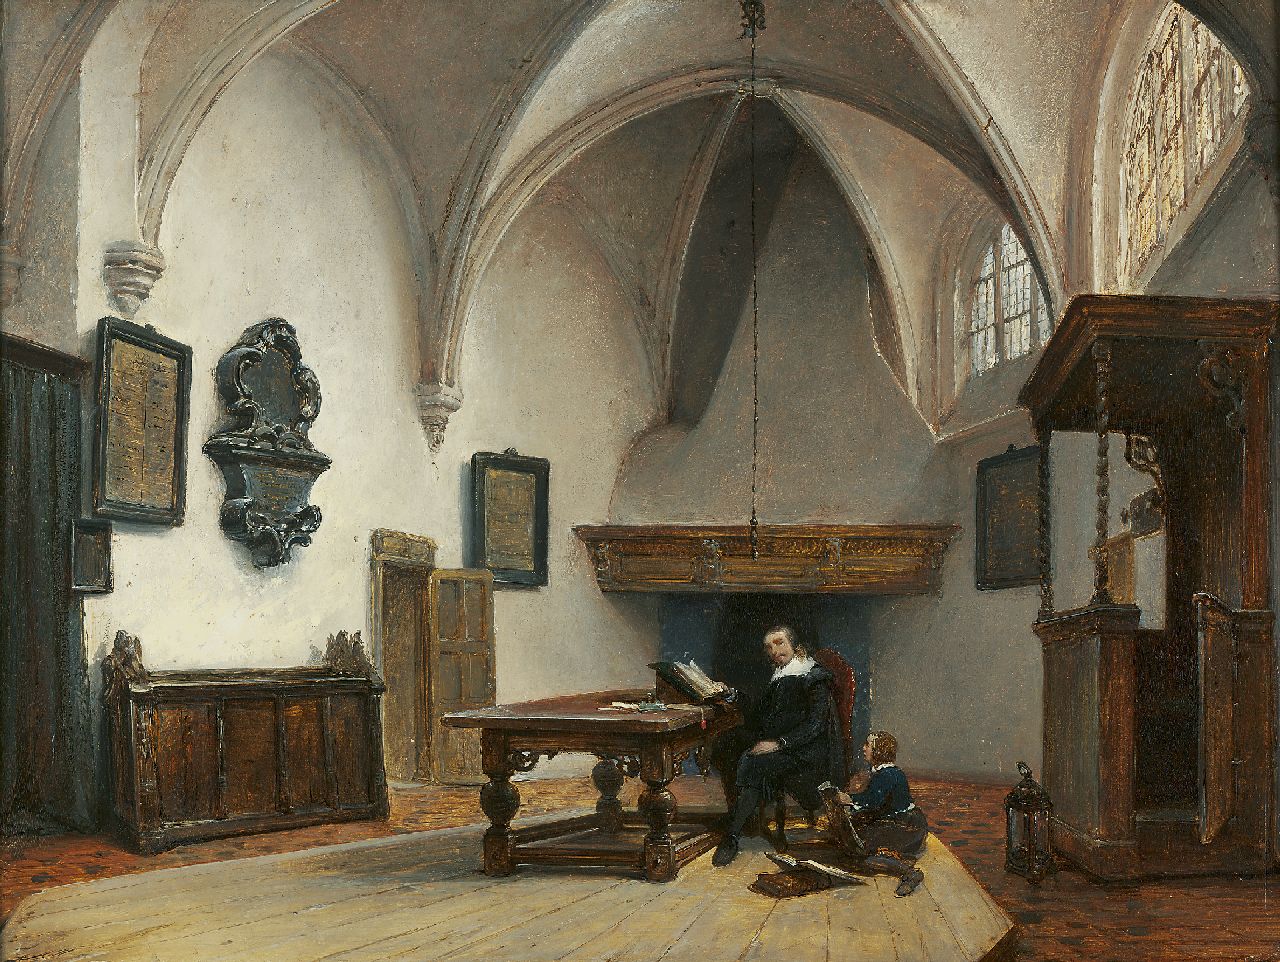 Bosboom J.  | Johannes Bosboom, Das Konsistorialzimmer in der Grote Kerk, Breda, Öl auf Holz 37,5 x 45,5 cm, Unterzeichnet r.u. in Schutzfarbe und zu datieren um 1850